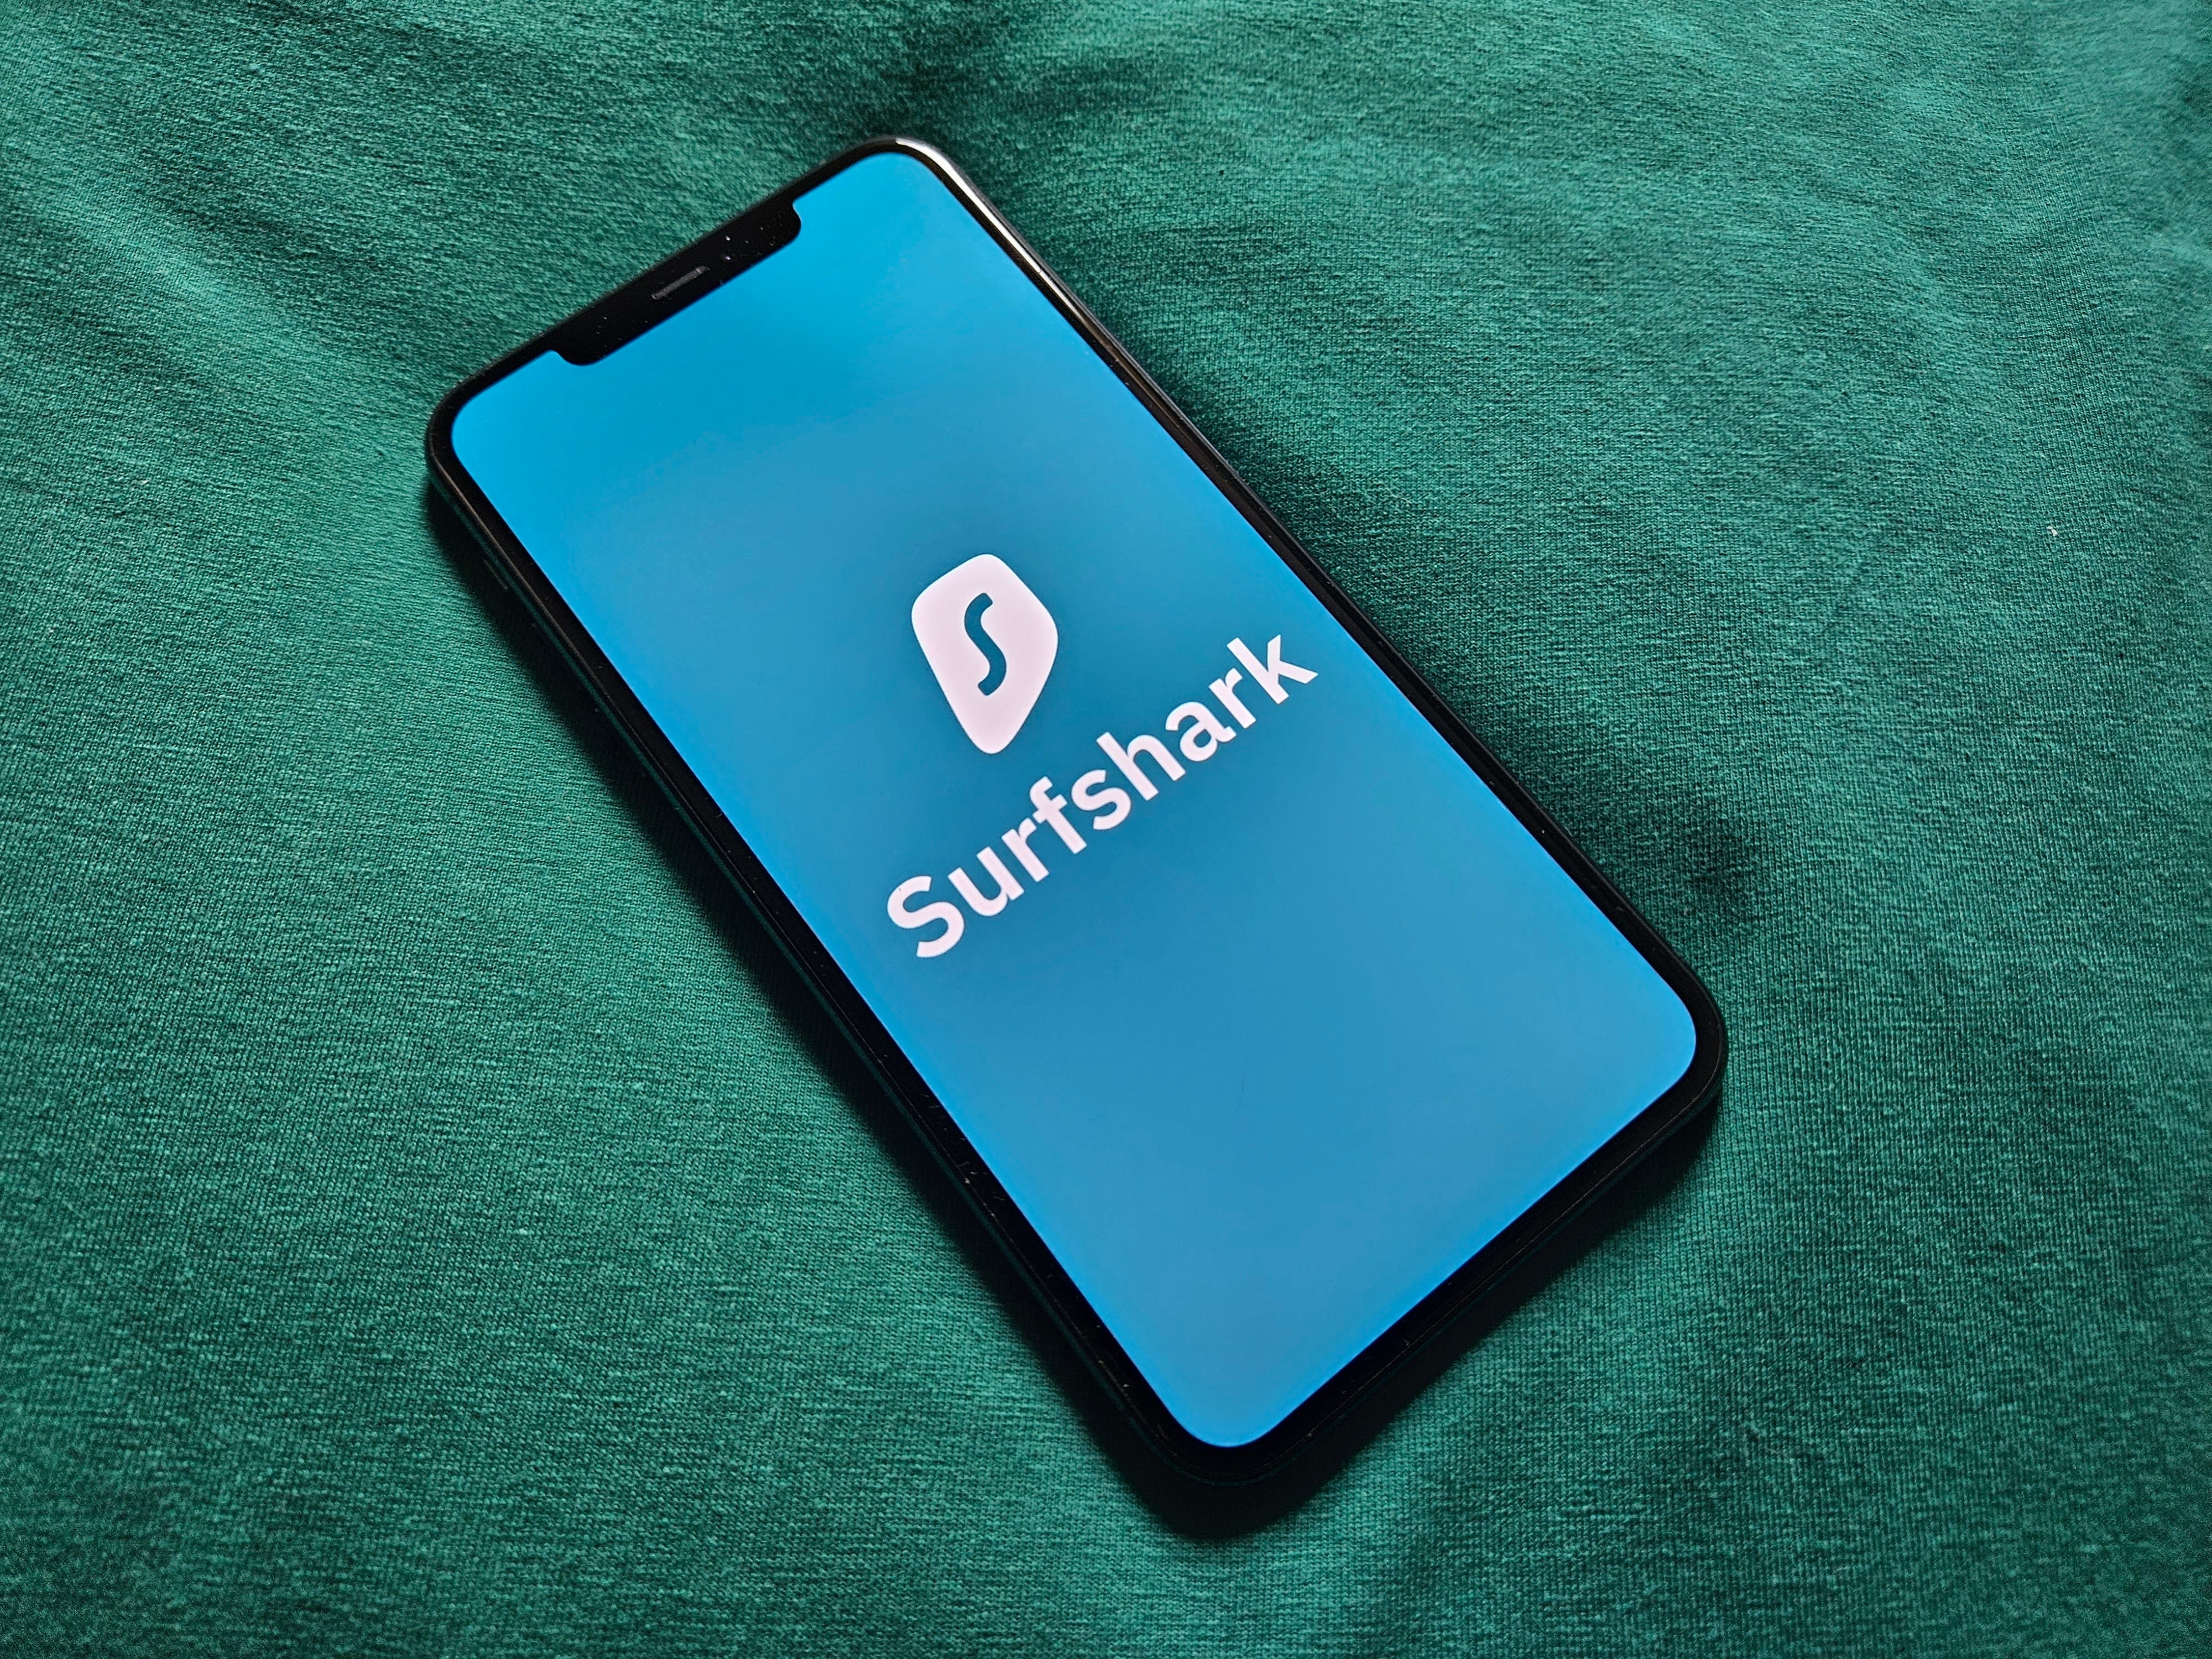 Surfshark-Logo auf einem iPhone